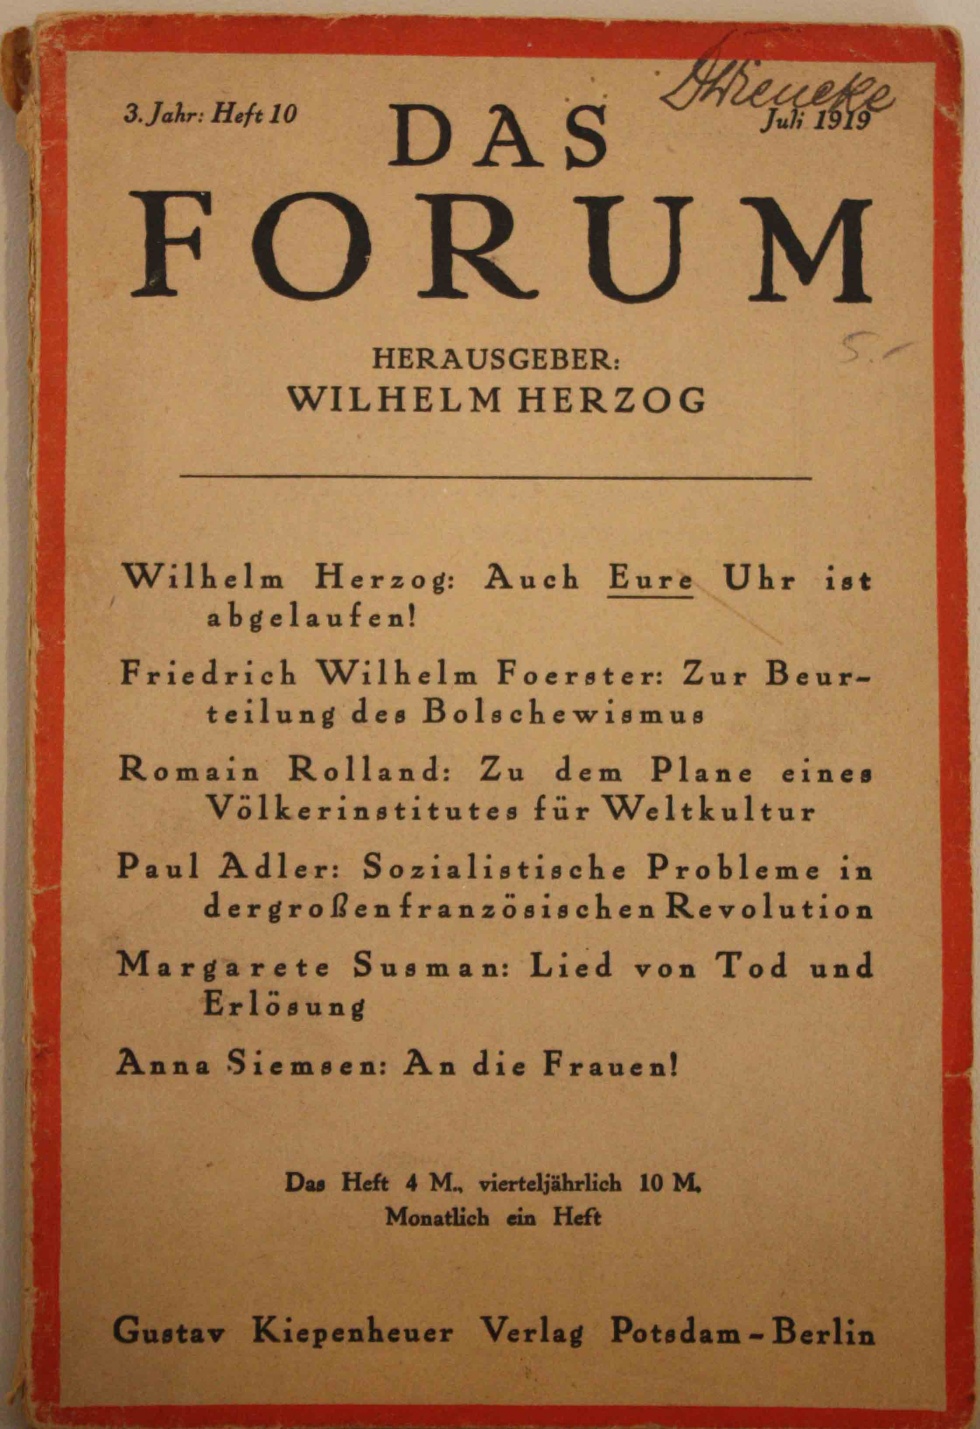 Das Forum, Juli 1919 (Kurt Tucholsky Literaturmuseum CC BY-NC-SA)